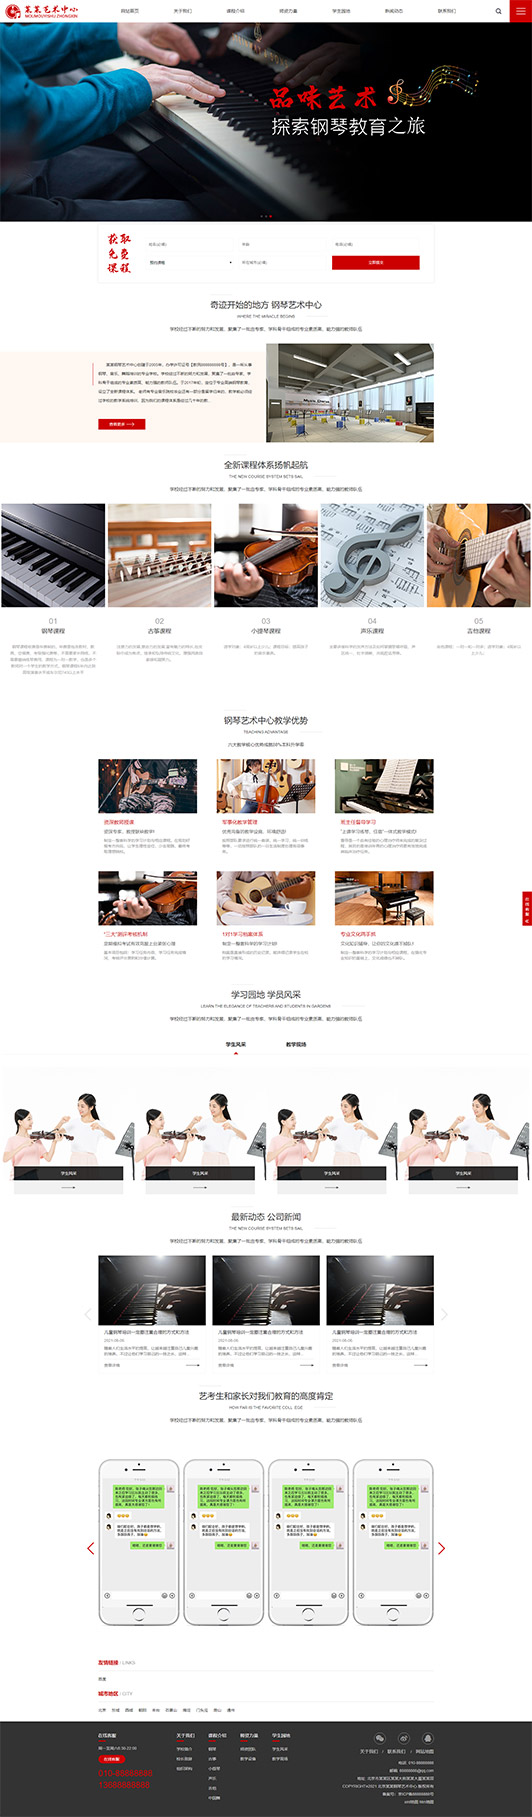 黄南钢琴艺术培训公司响应式企业网站